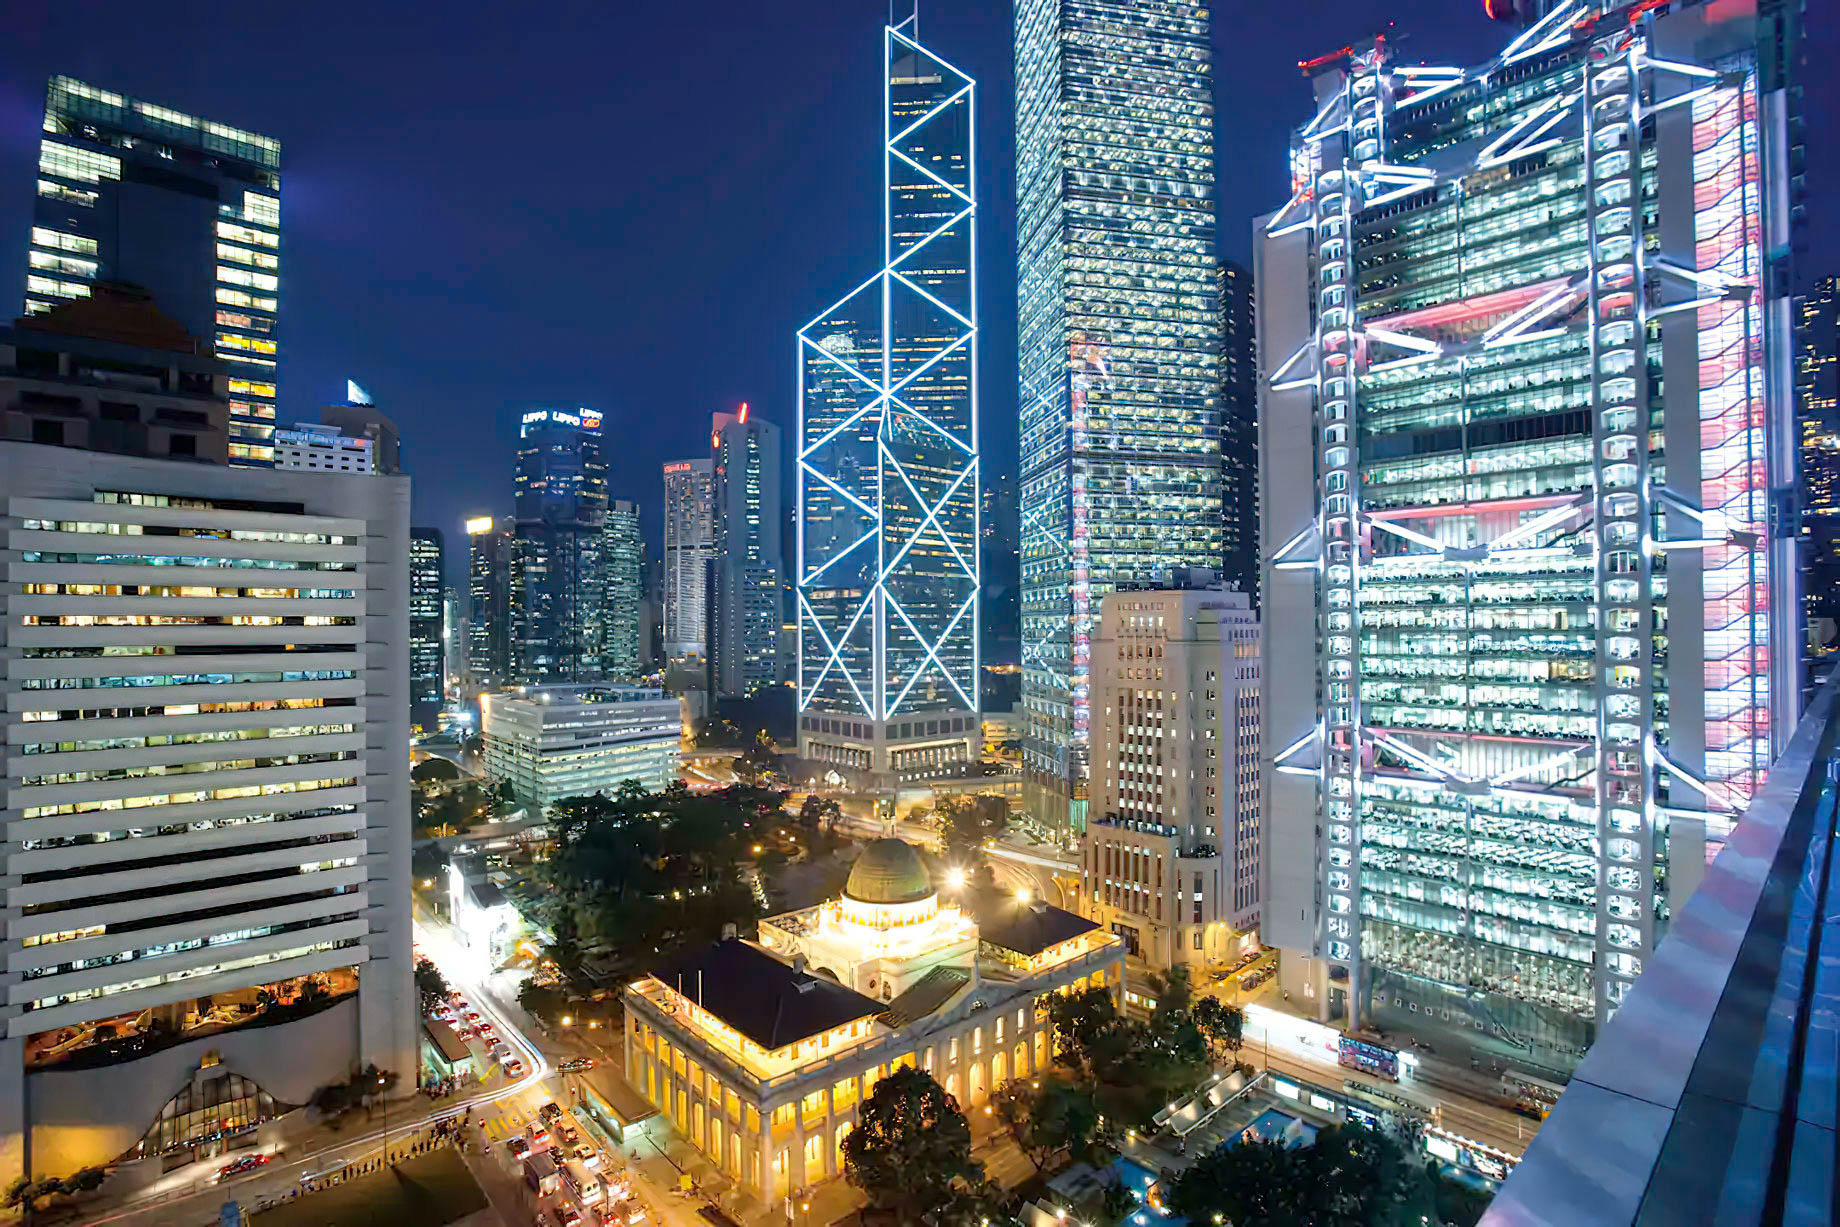 Mandarin Oriental, Hong Kong Hotel - Hong Kong, China - City View Night